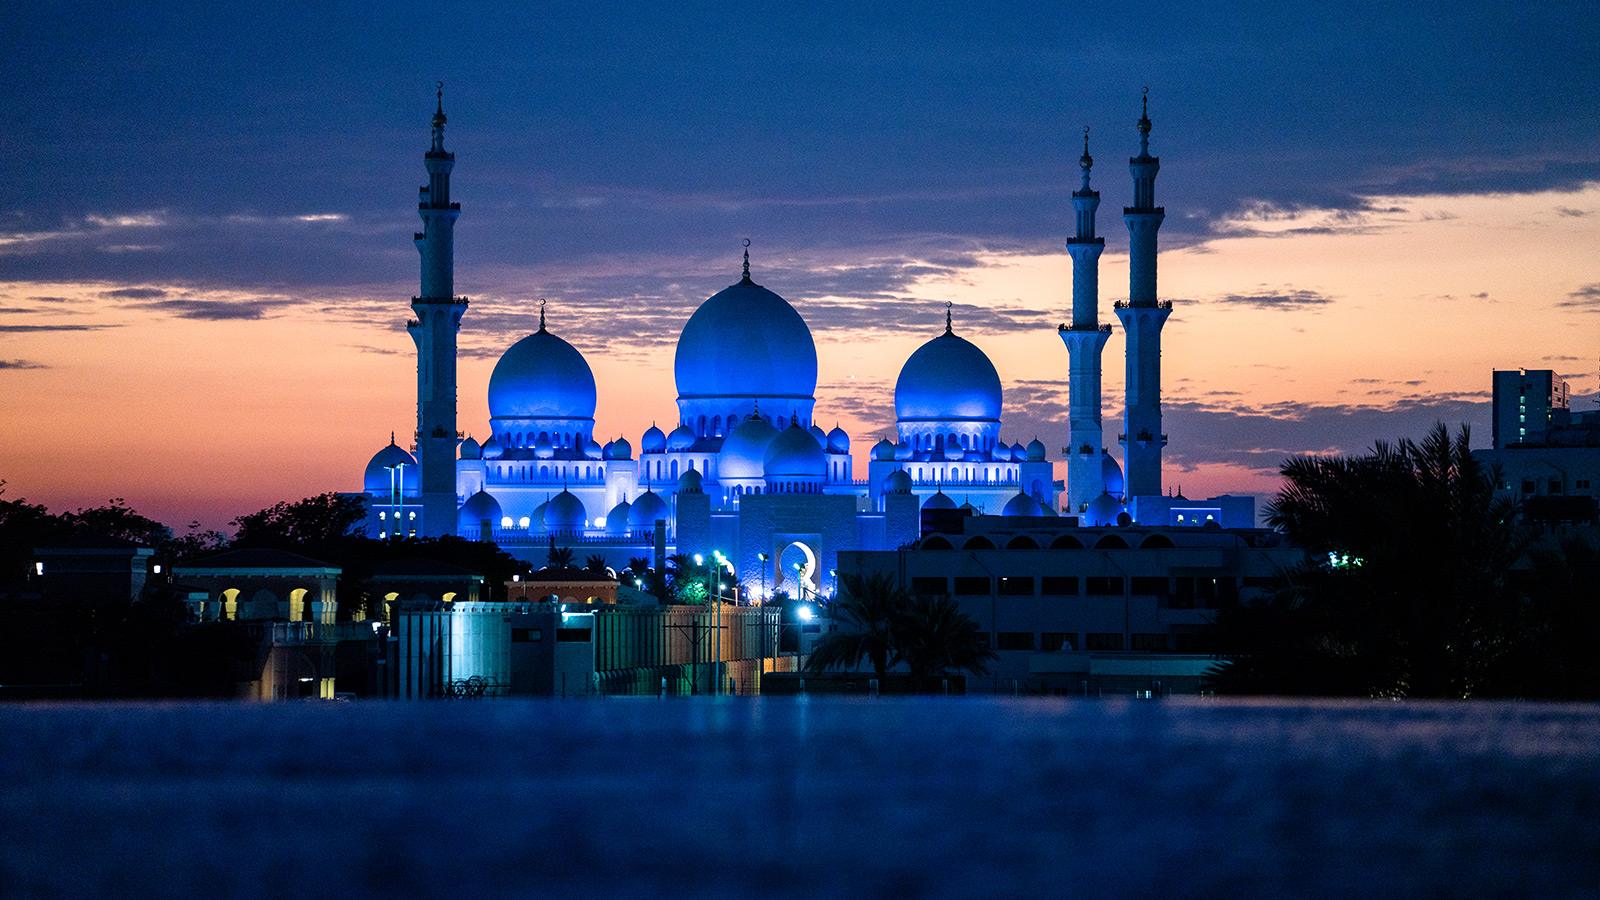 Le célèbre minaret d'Abu Dhabi la nuit, illustrant la spiritualité et l'architecture culturelle.